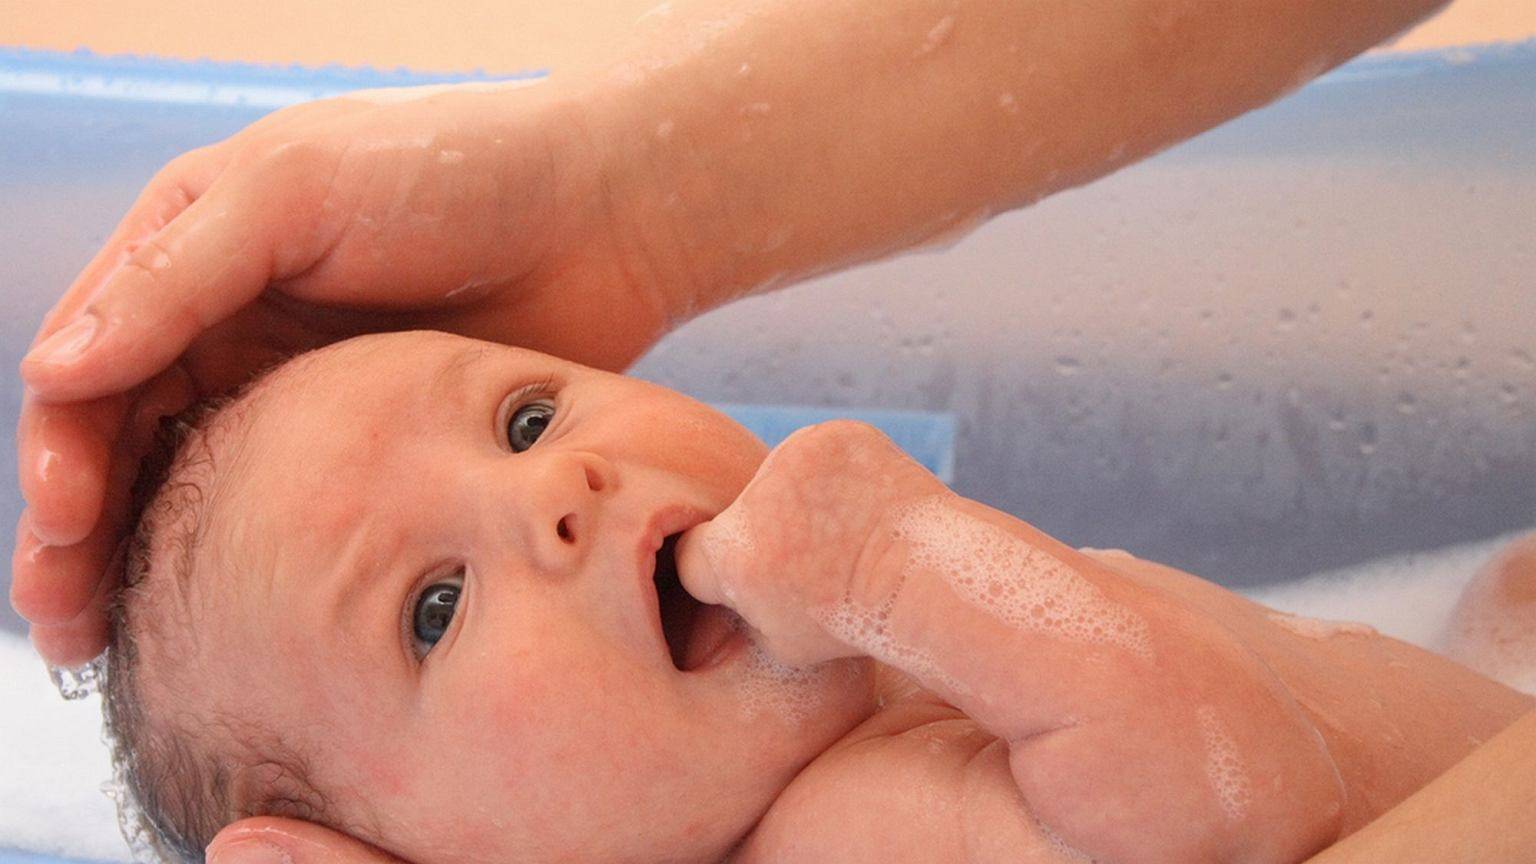  первое купание новорожденного дома: при какой температуре, сколько по времени купать малыша, лучше до еды или после